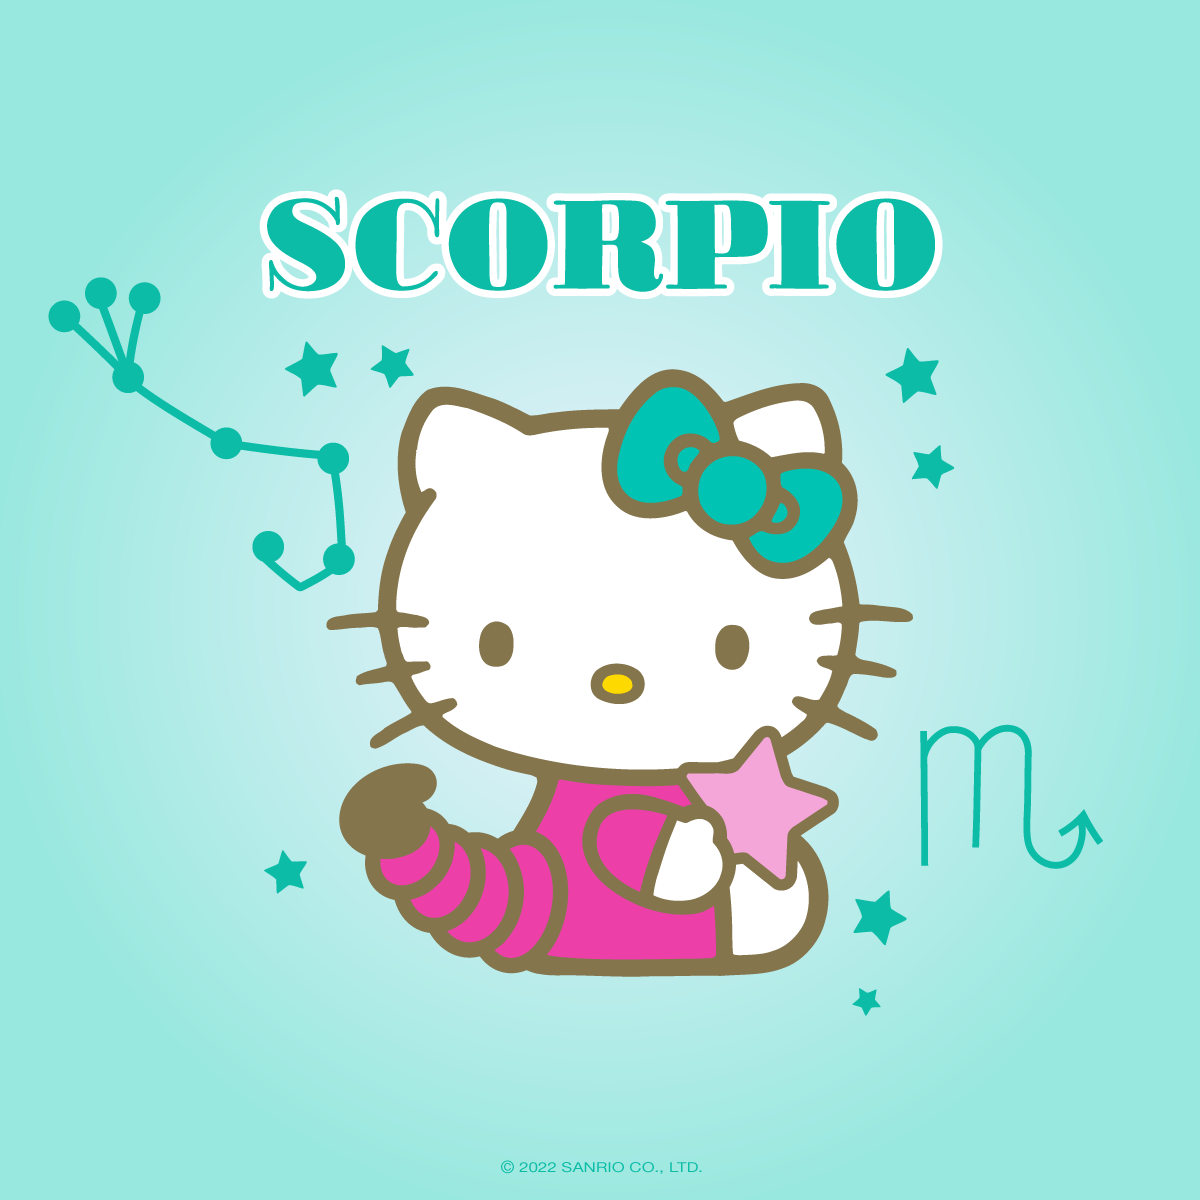 Hello Scorpio Season